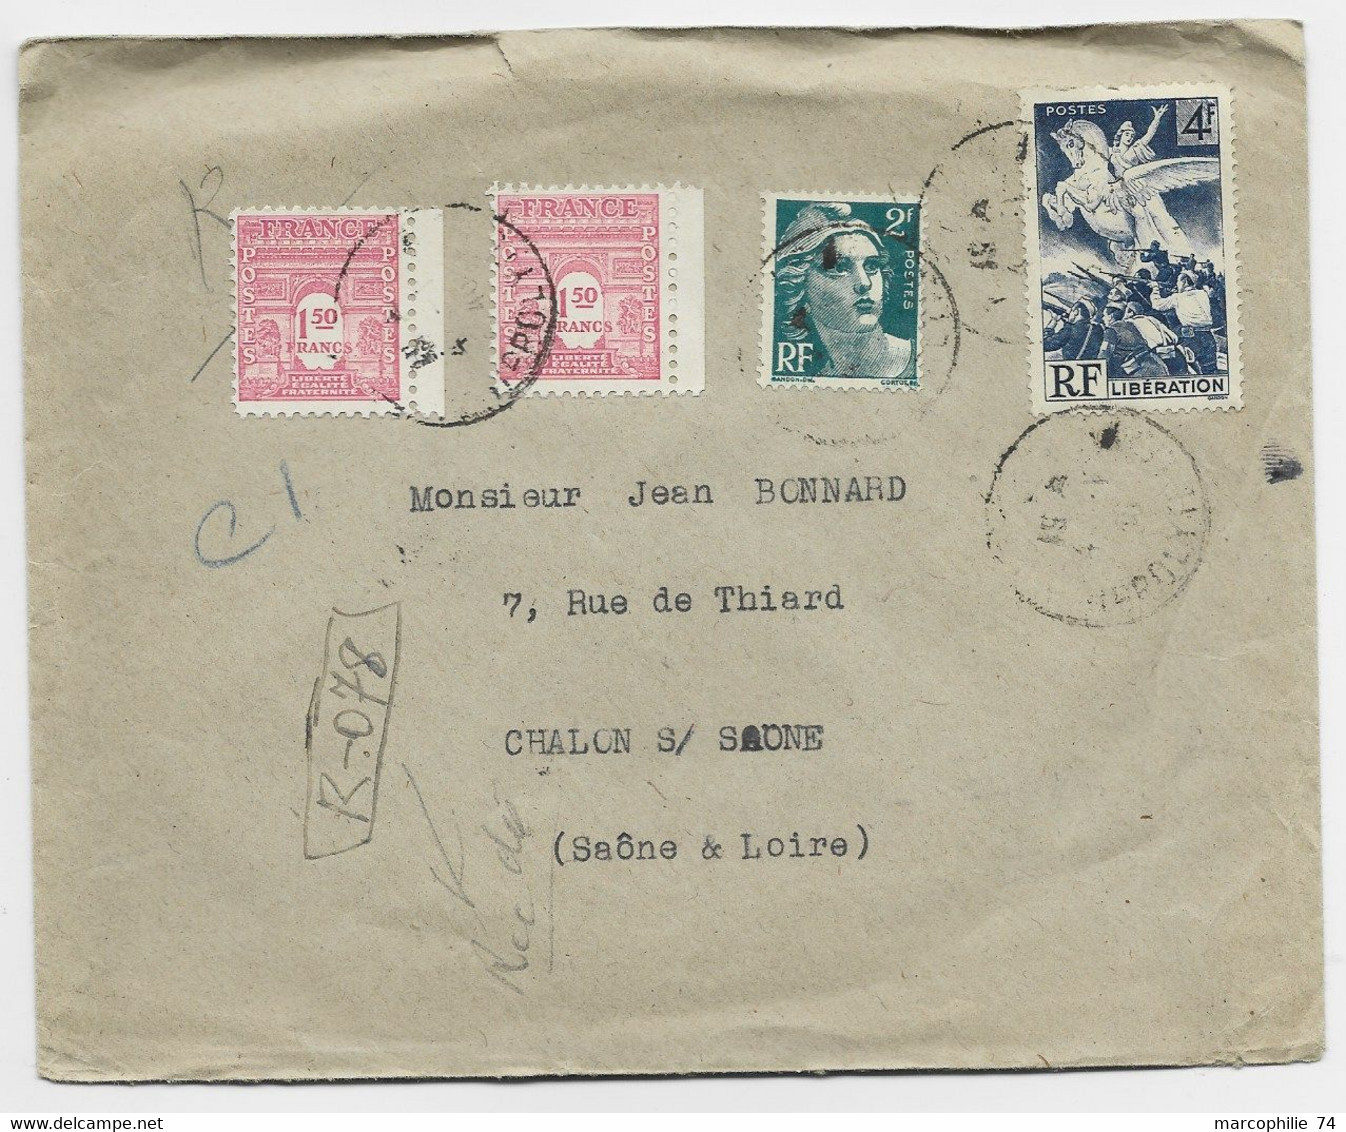 FRANCE ARC TRIOMPHE 1FR50 ROSEX2+ GANDON 2FR+ 4FR LIBERATION LETTRE REC PROVISOIRE PARIS 1946 AU TARIF - 1944-45 Arco Del Triunfo